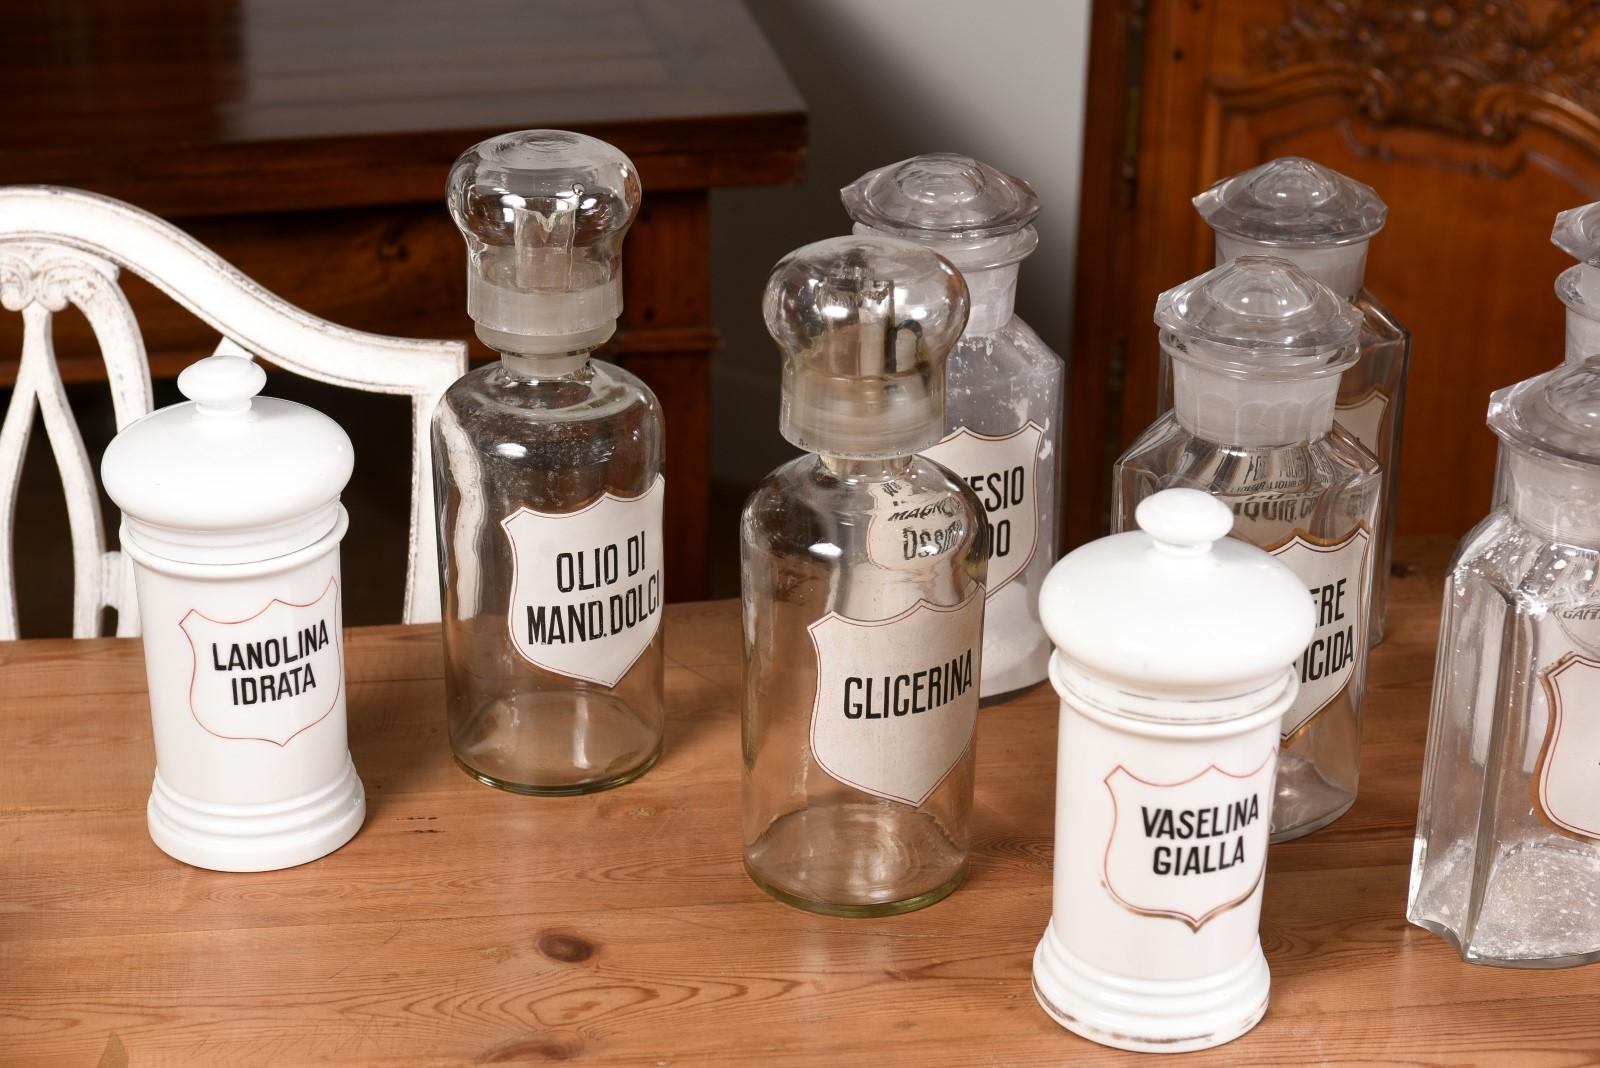 36 Apothekergefäße aus italienischem Glas oder Porzellan im Vintage-Stil mit Etiketten, verkauft pro Stück im Angebot 8